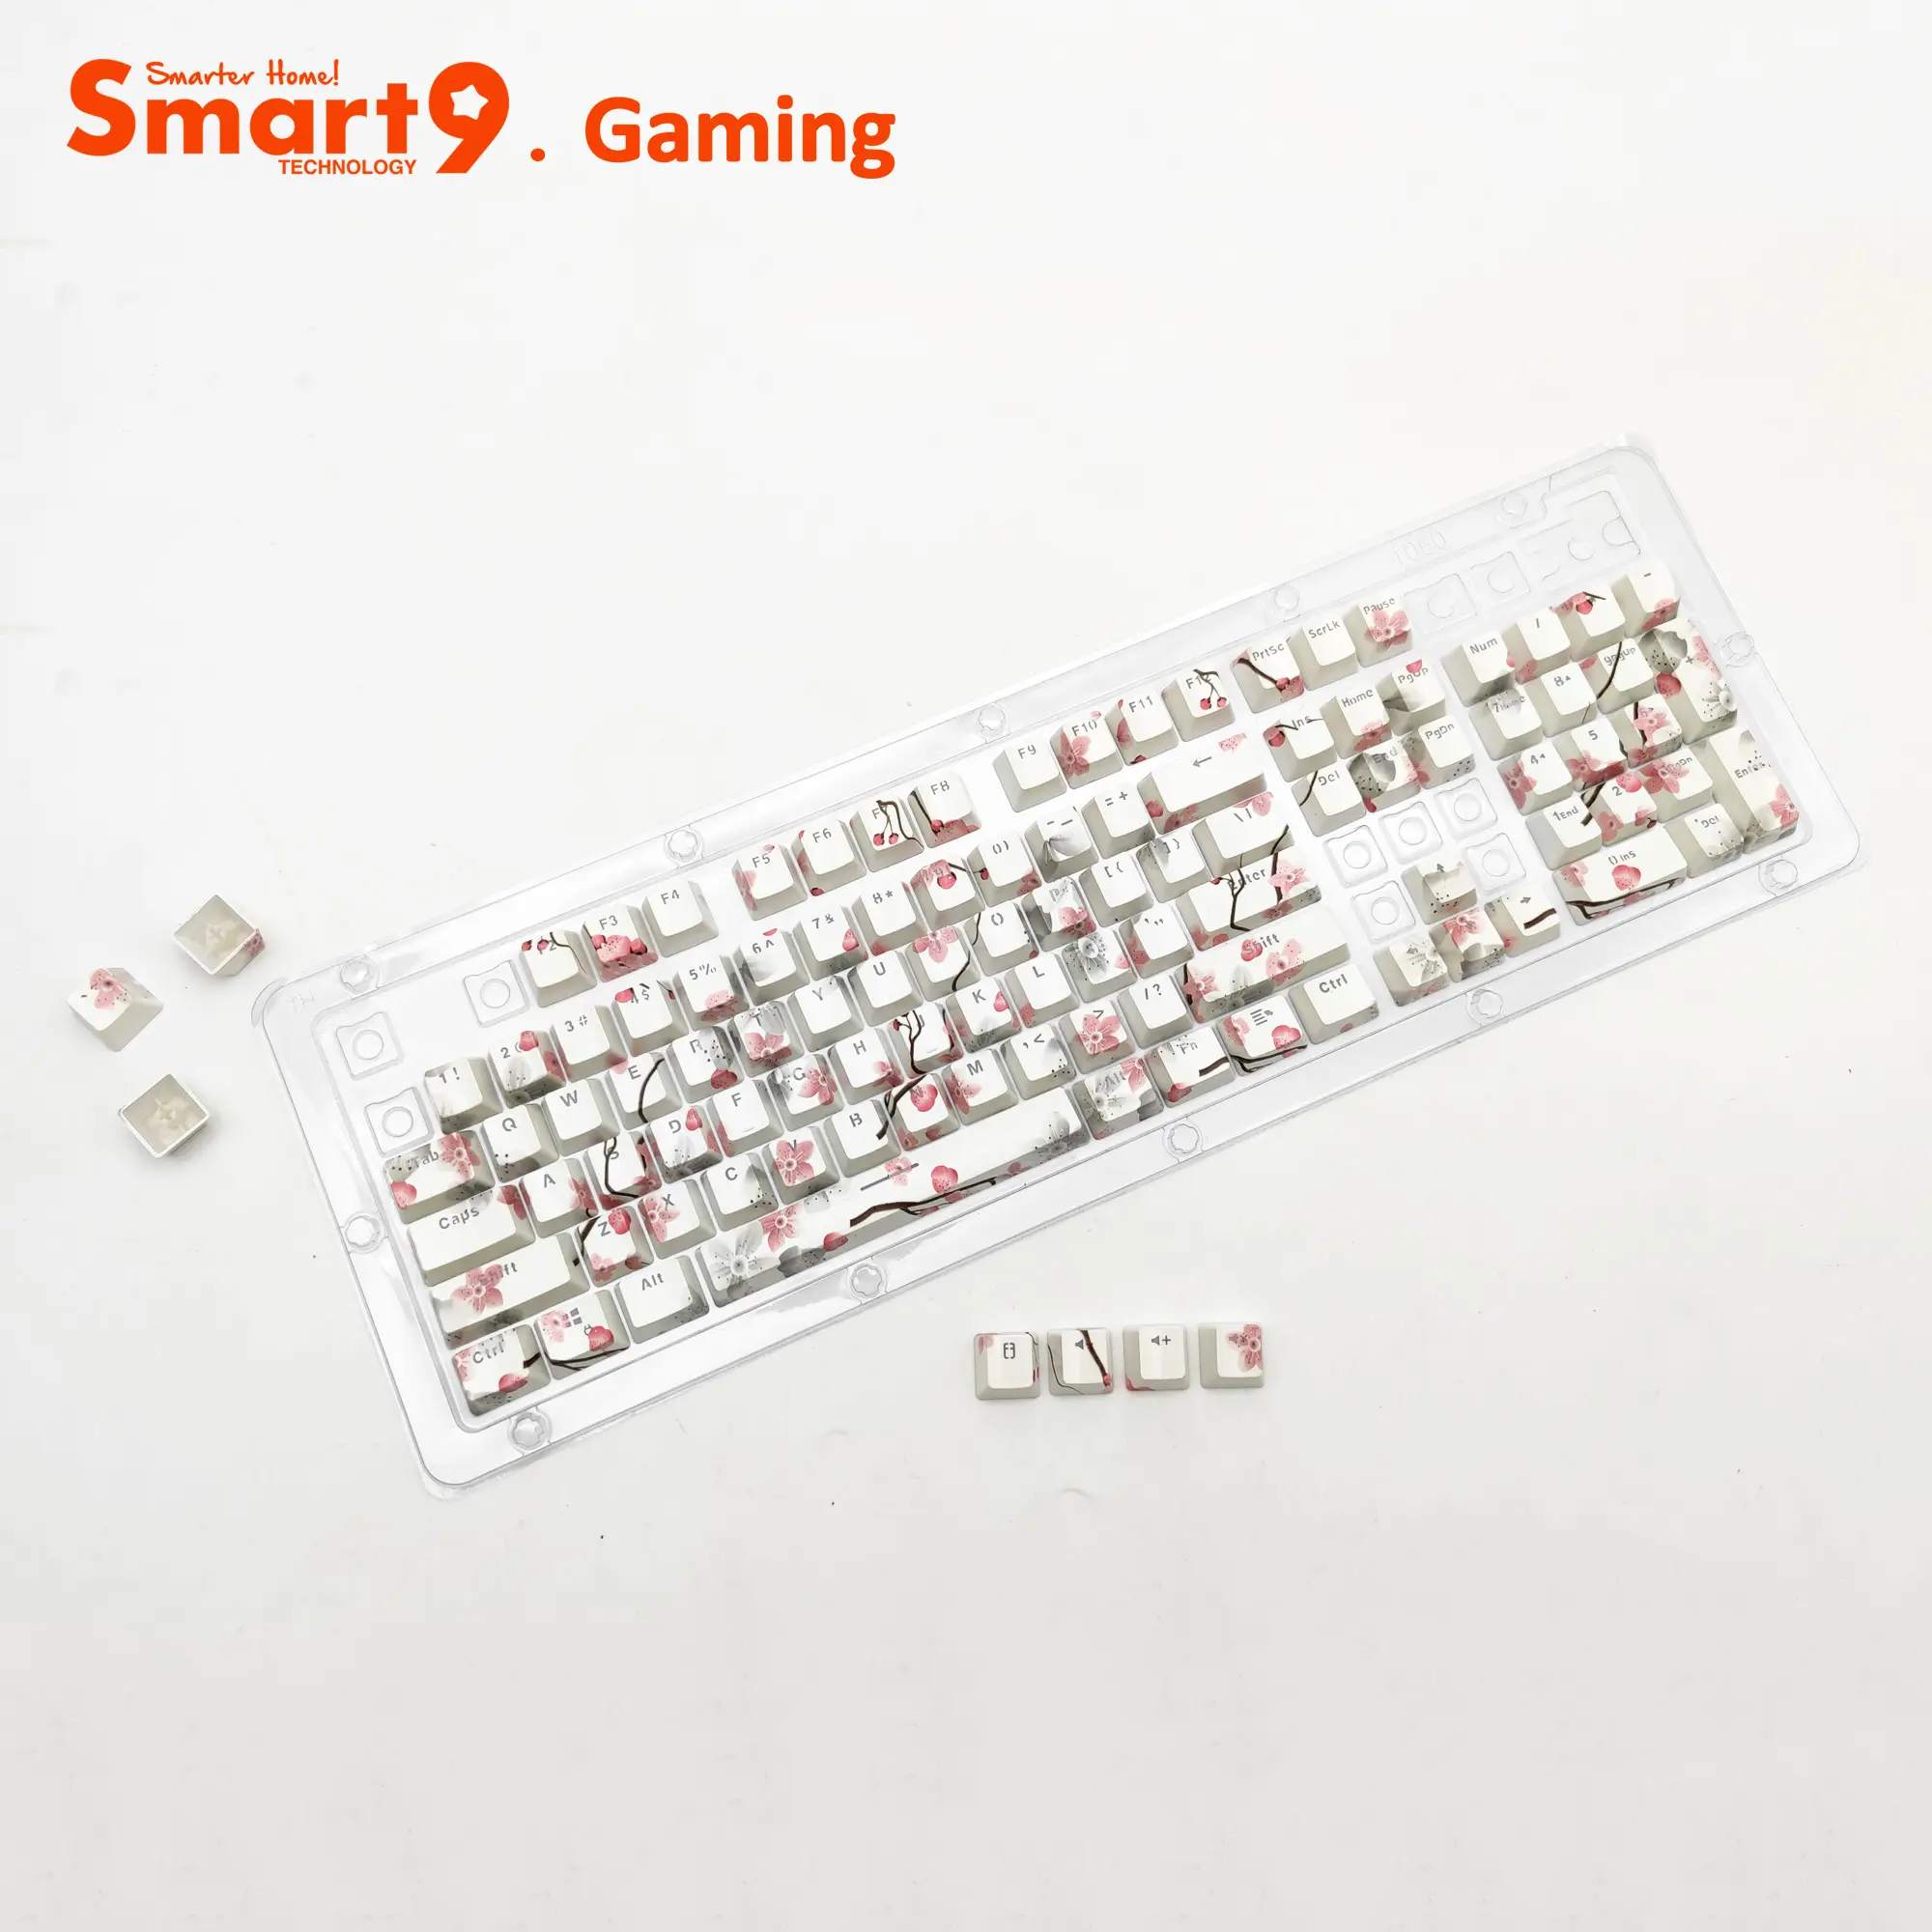 Portachiavi PBT Smart9 Sakura con stampa ad acqua per tastiere da gioco meccaniche Wireless cablate